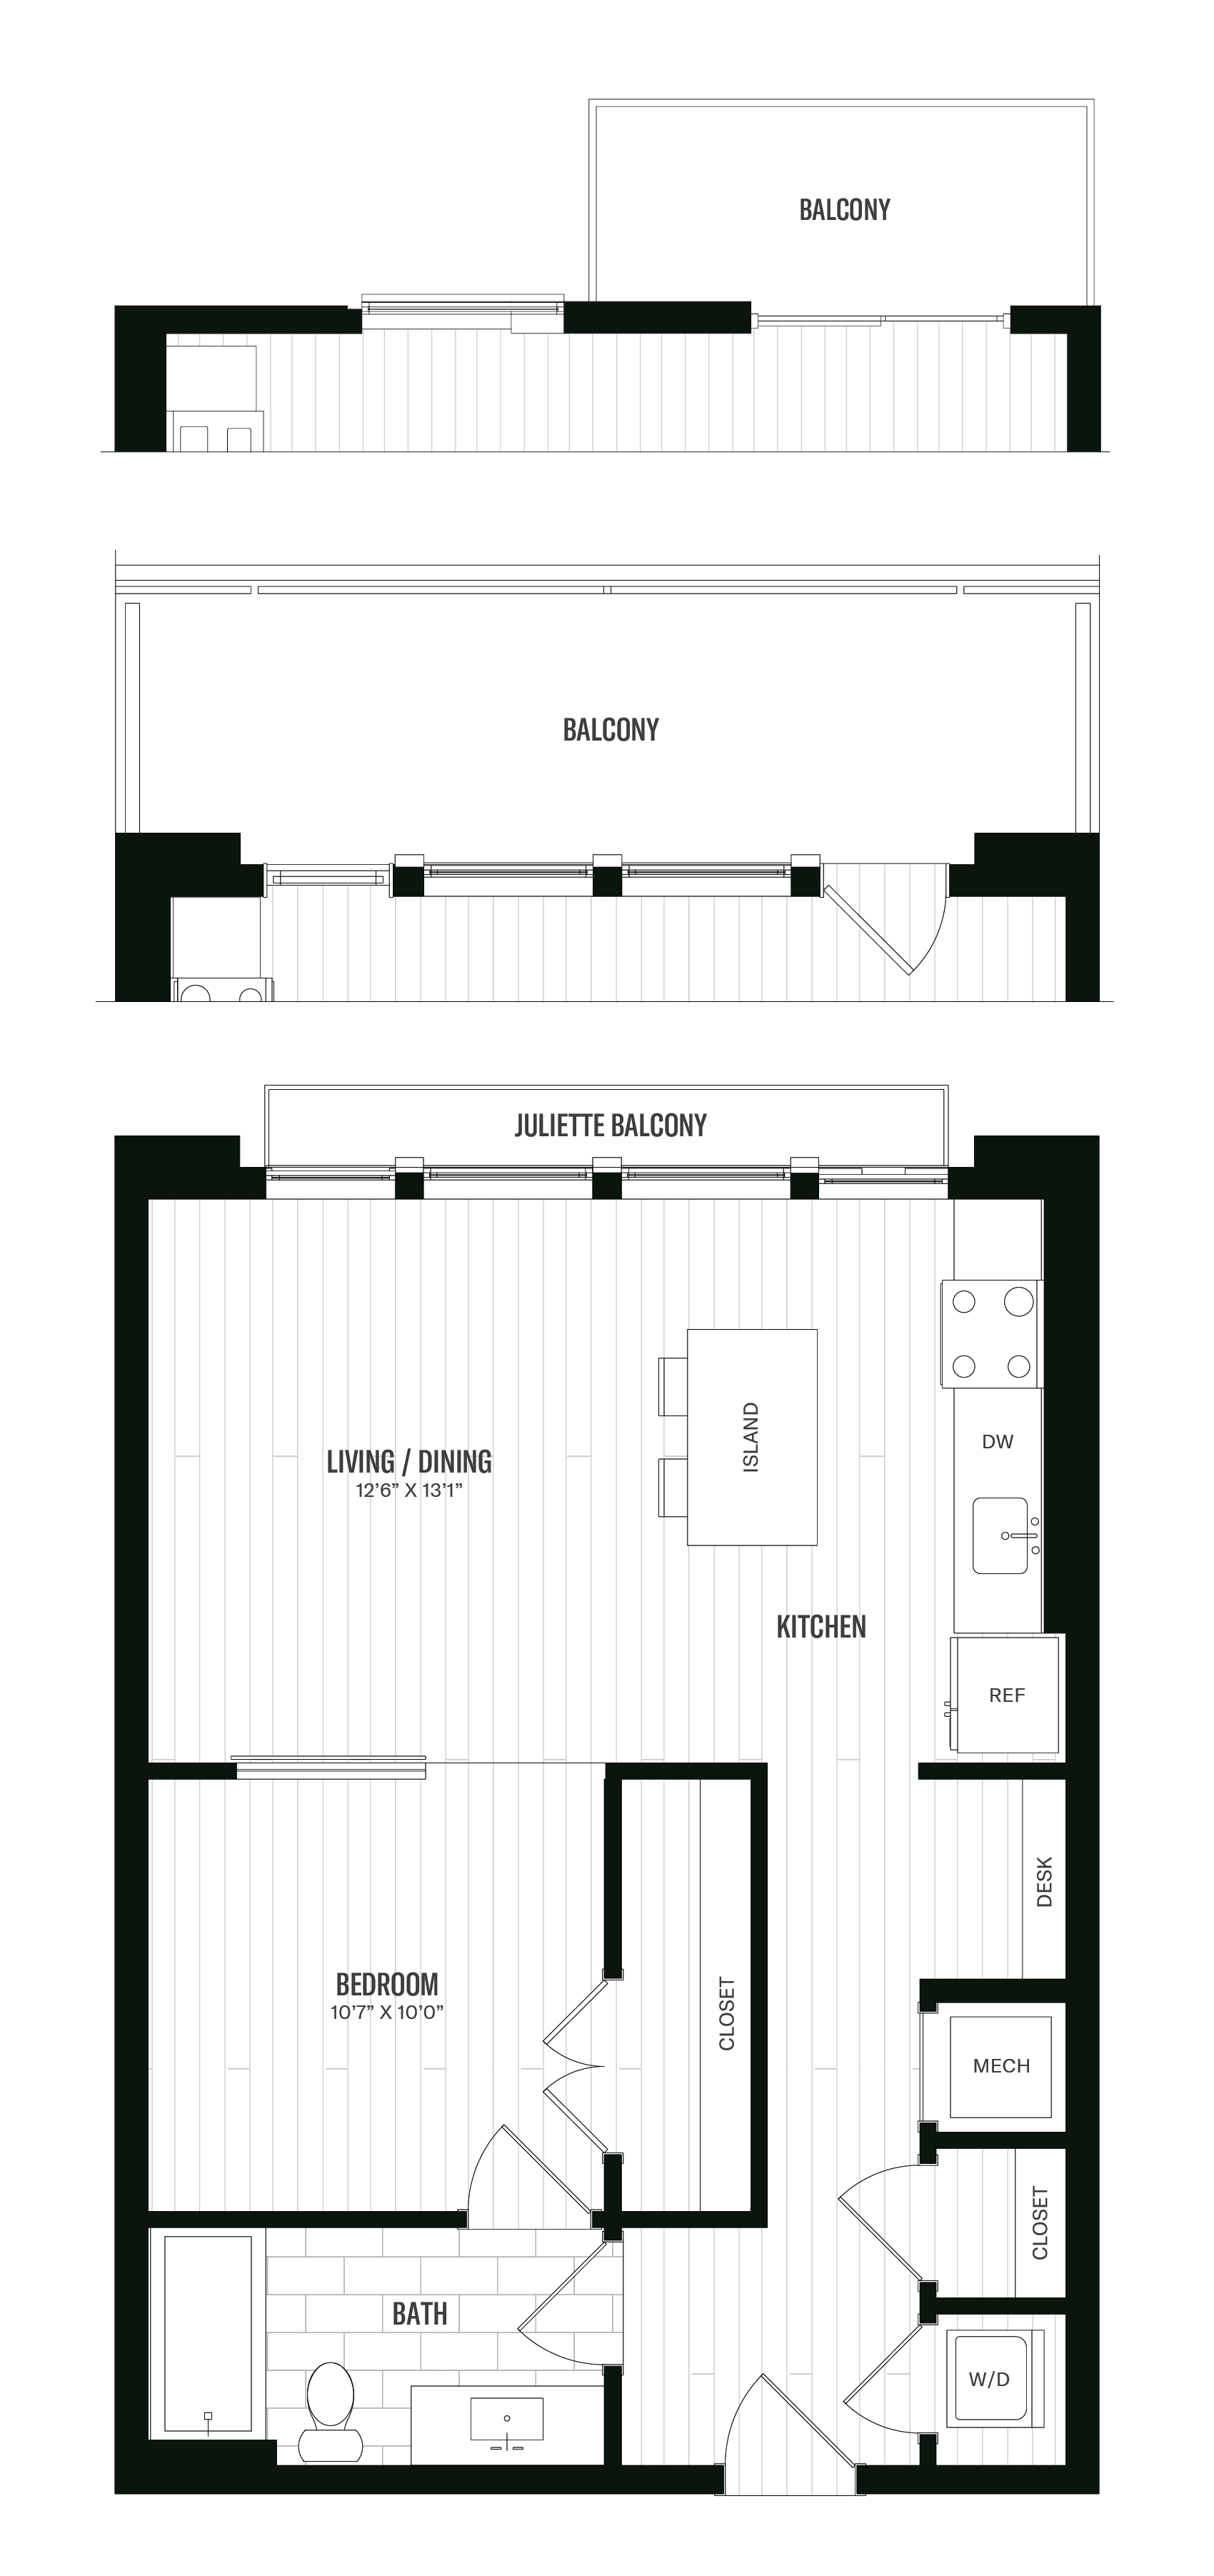 Floorplan image of unit 645